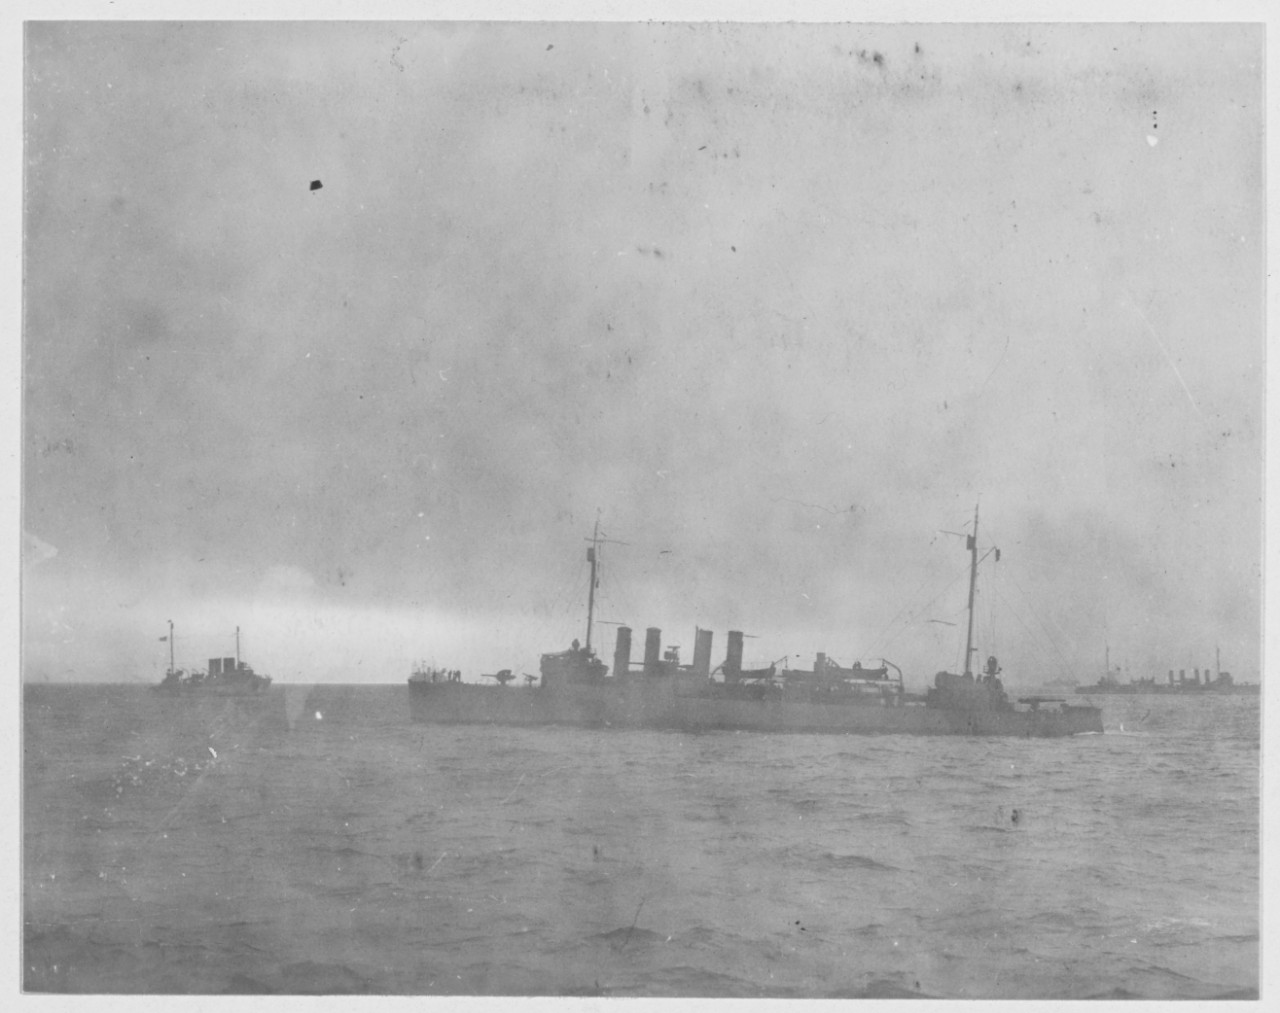 U.S. Destroyers entering Brest, France during World War I